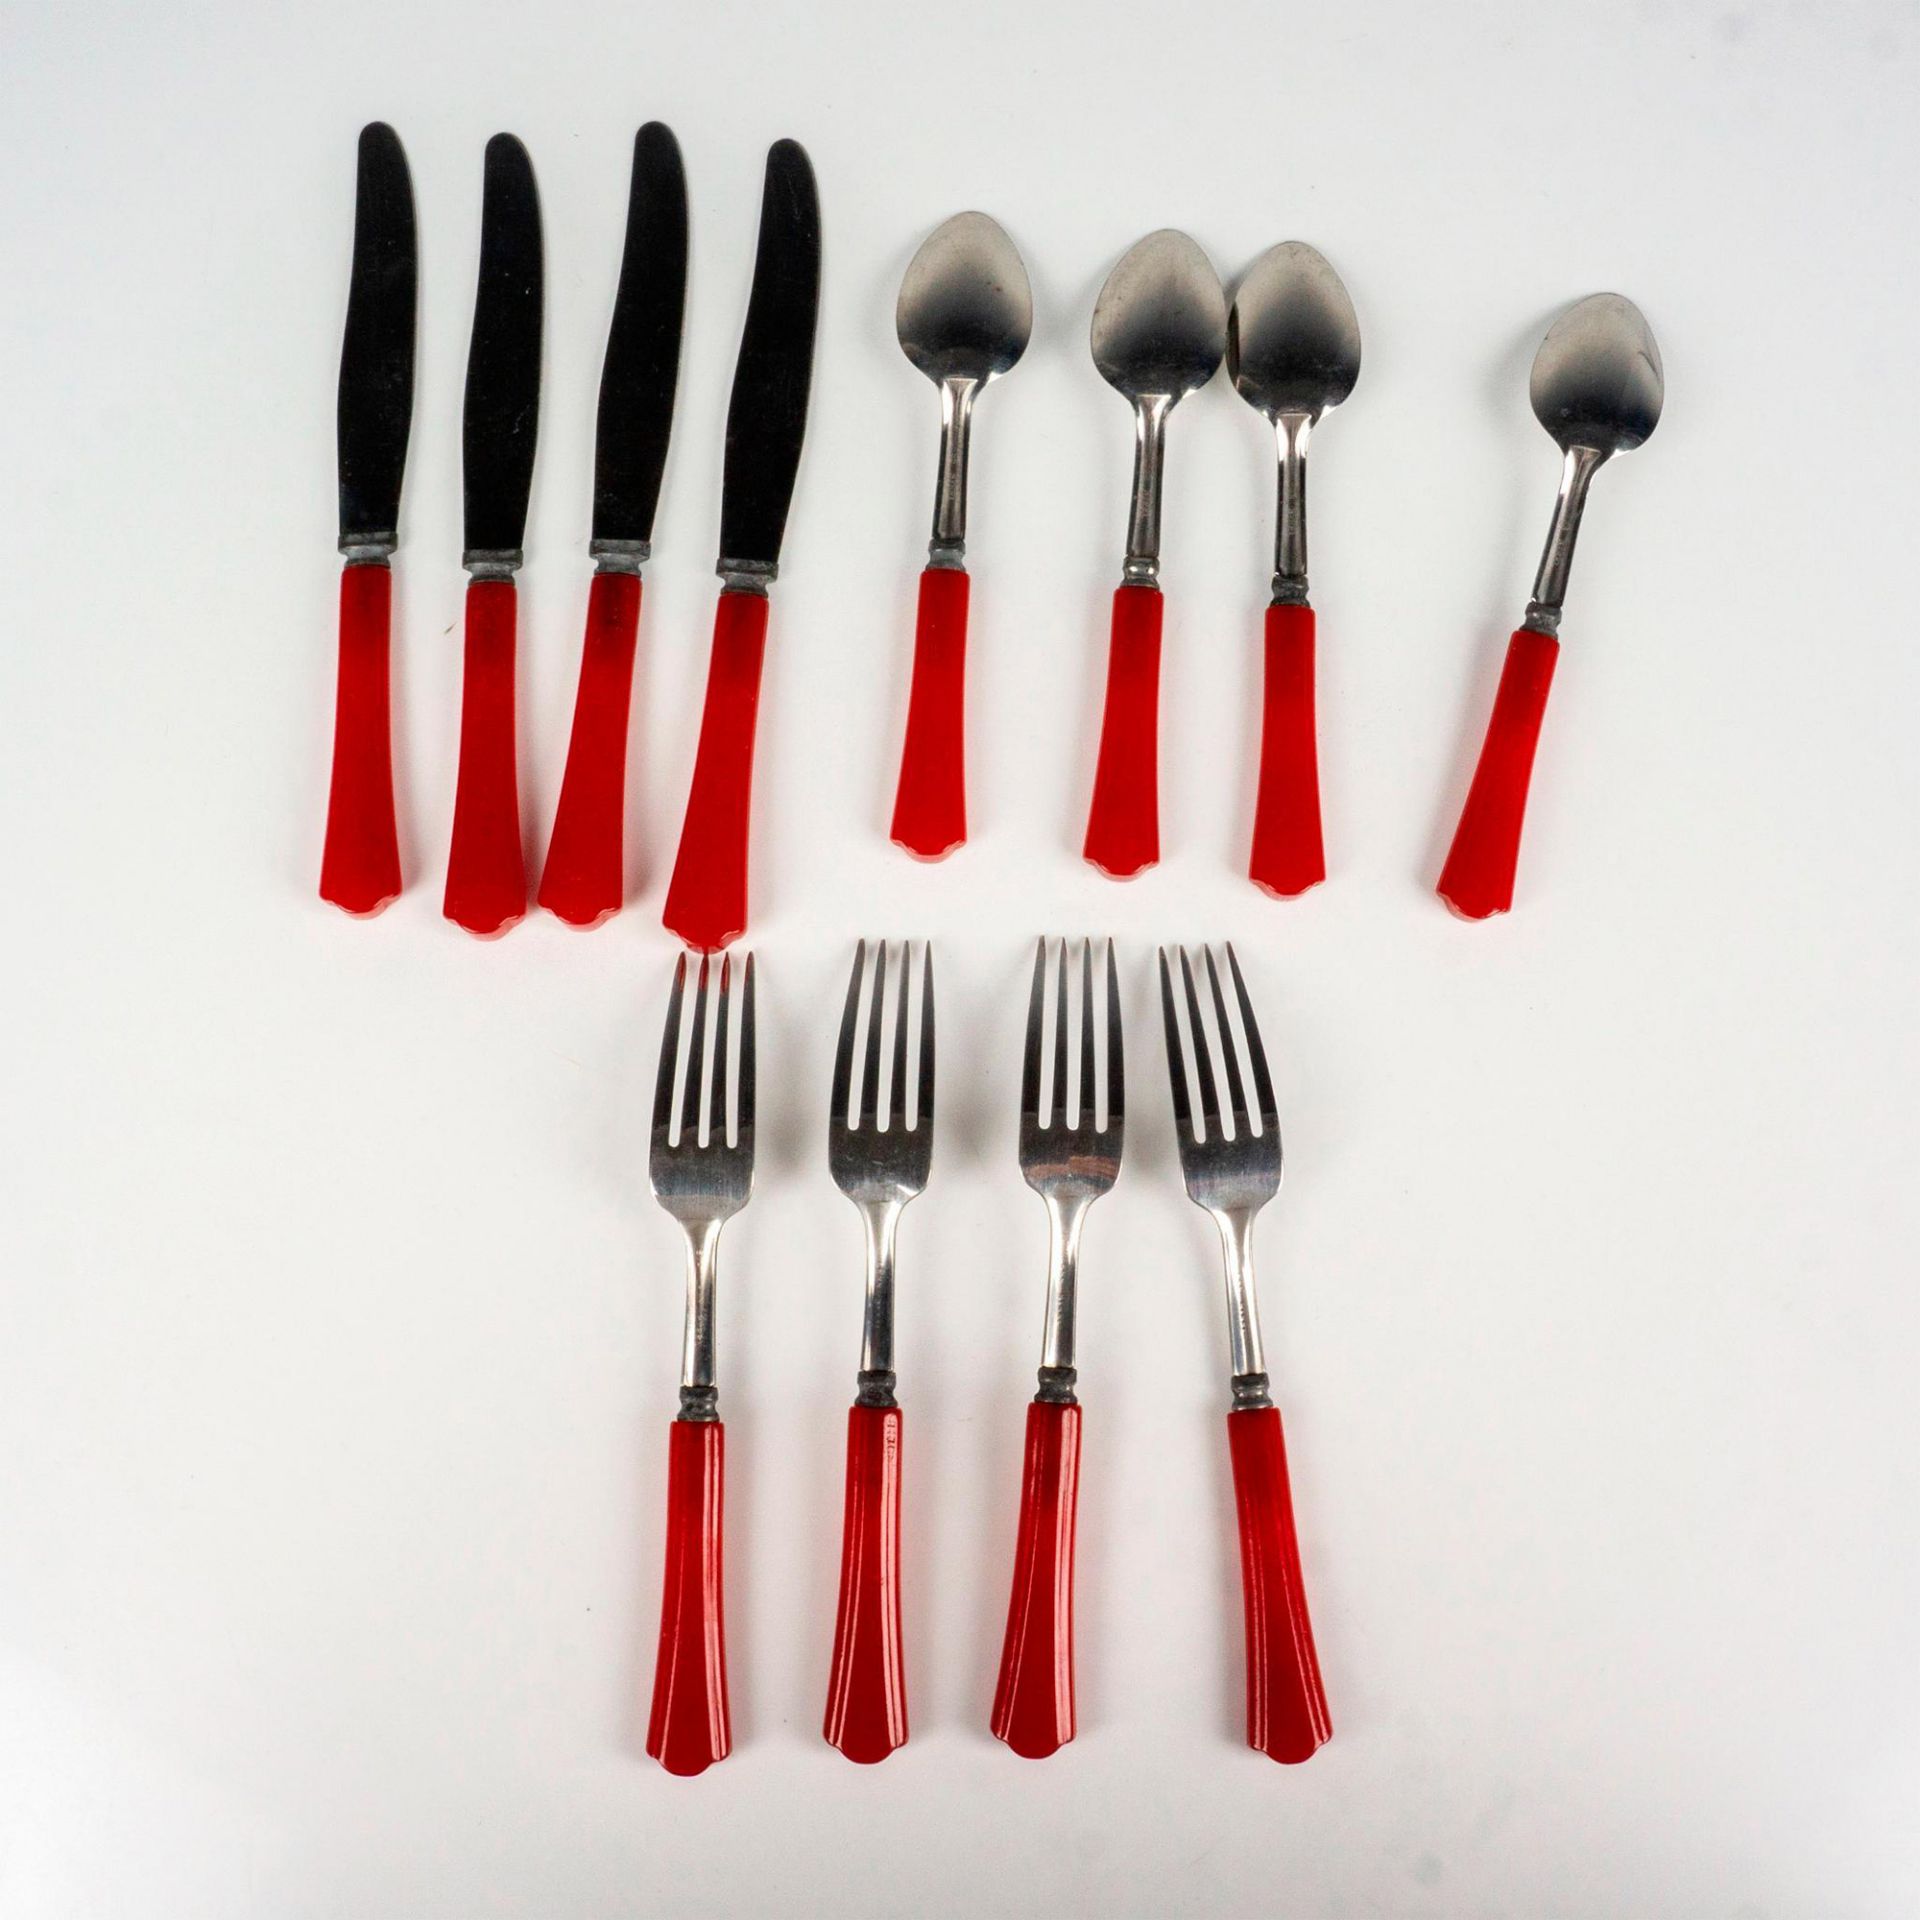 12pc Vintage Red Bakelite Silverware, Forks, Knives, Spoons - Image 3 of 5